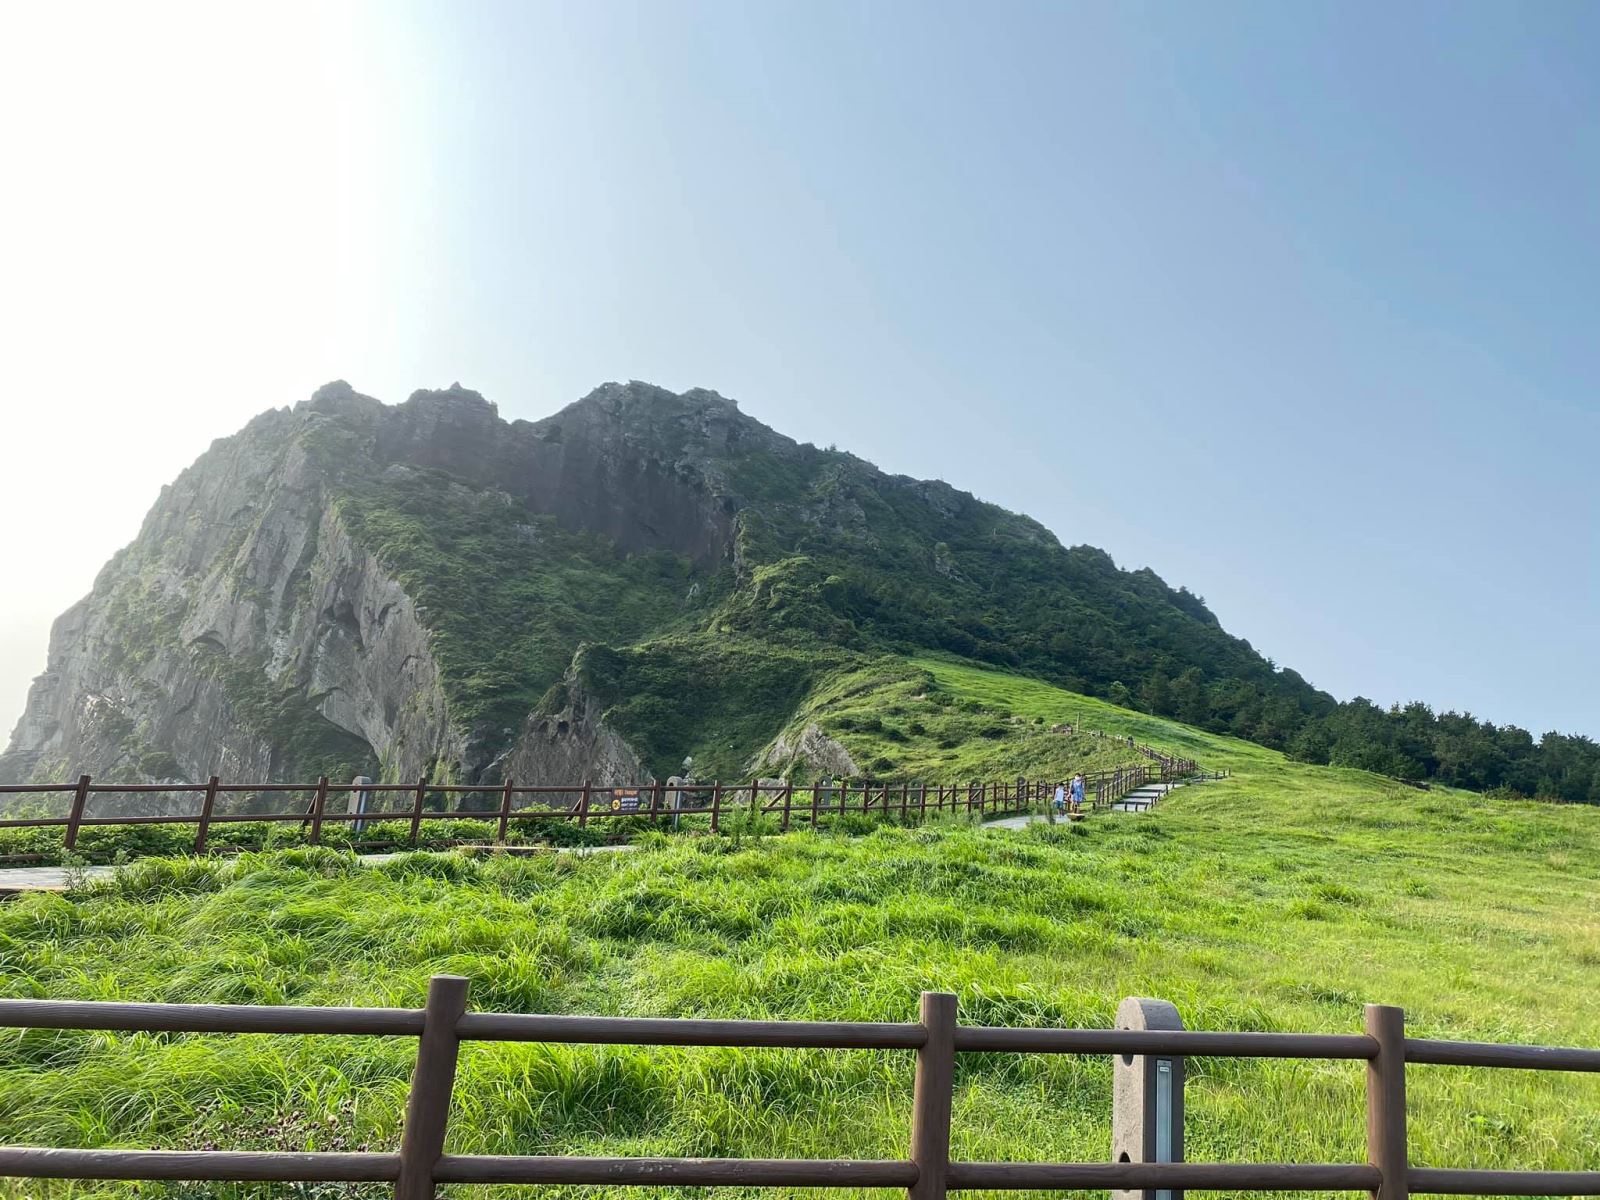 Phong cảnh thiên nhiên ở Jeju còn rất hoang sơ và yên bình